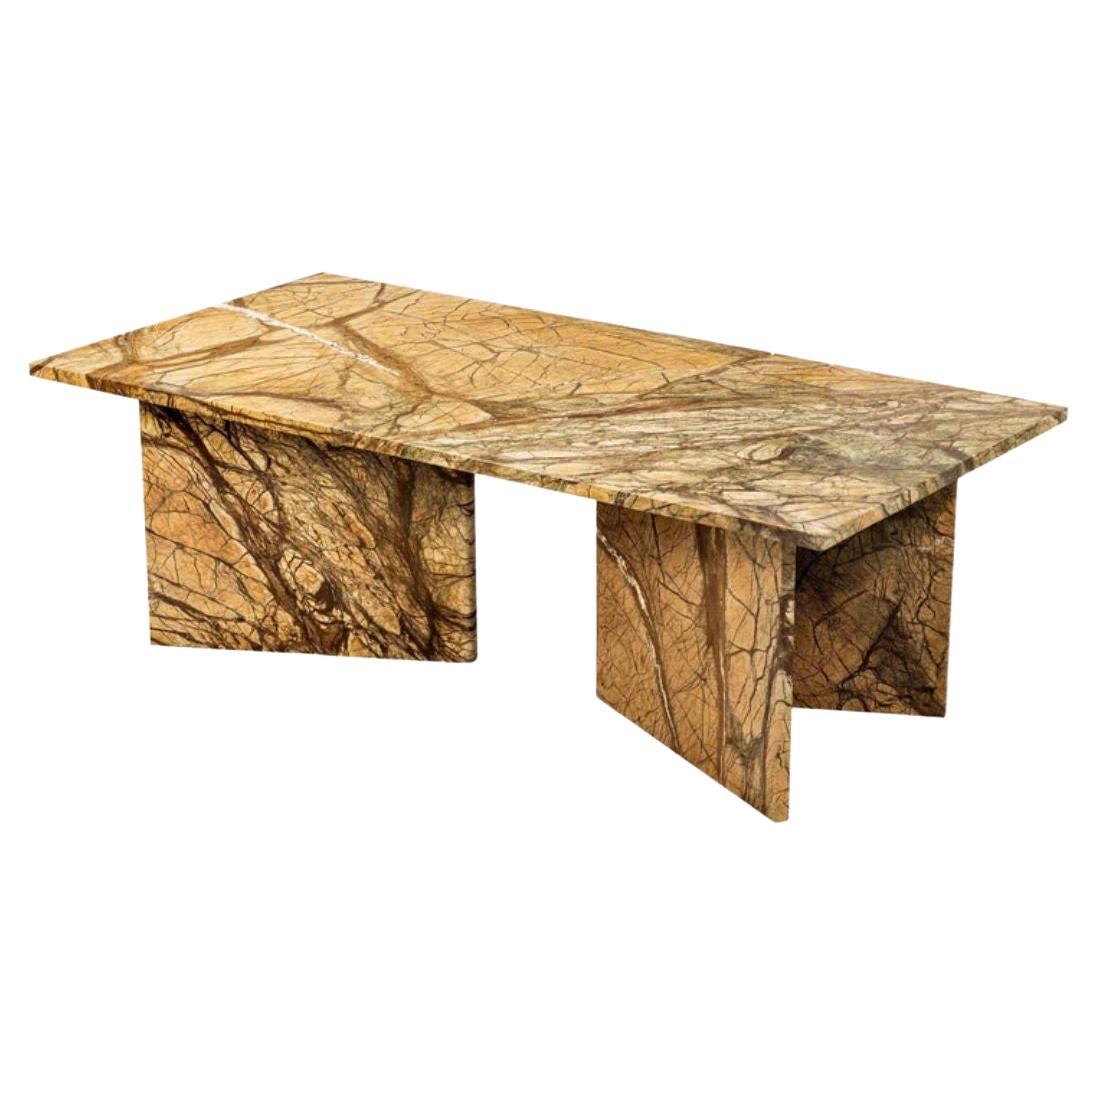 Table basse rectangulaire en marbre